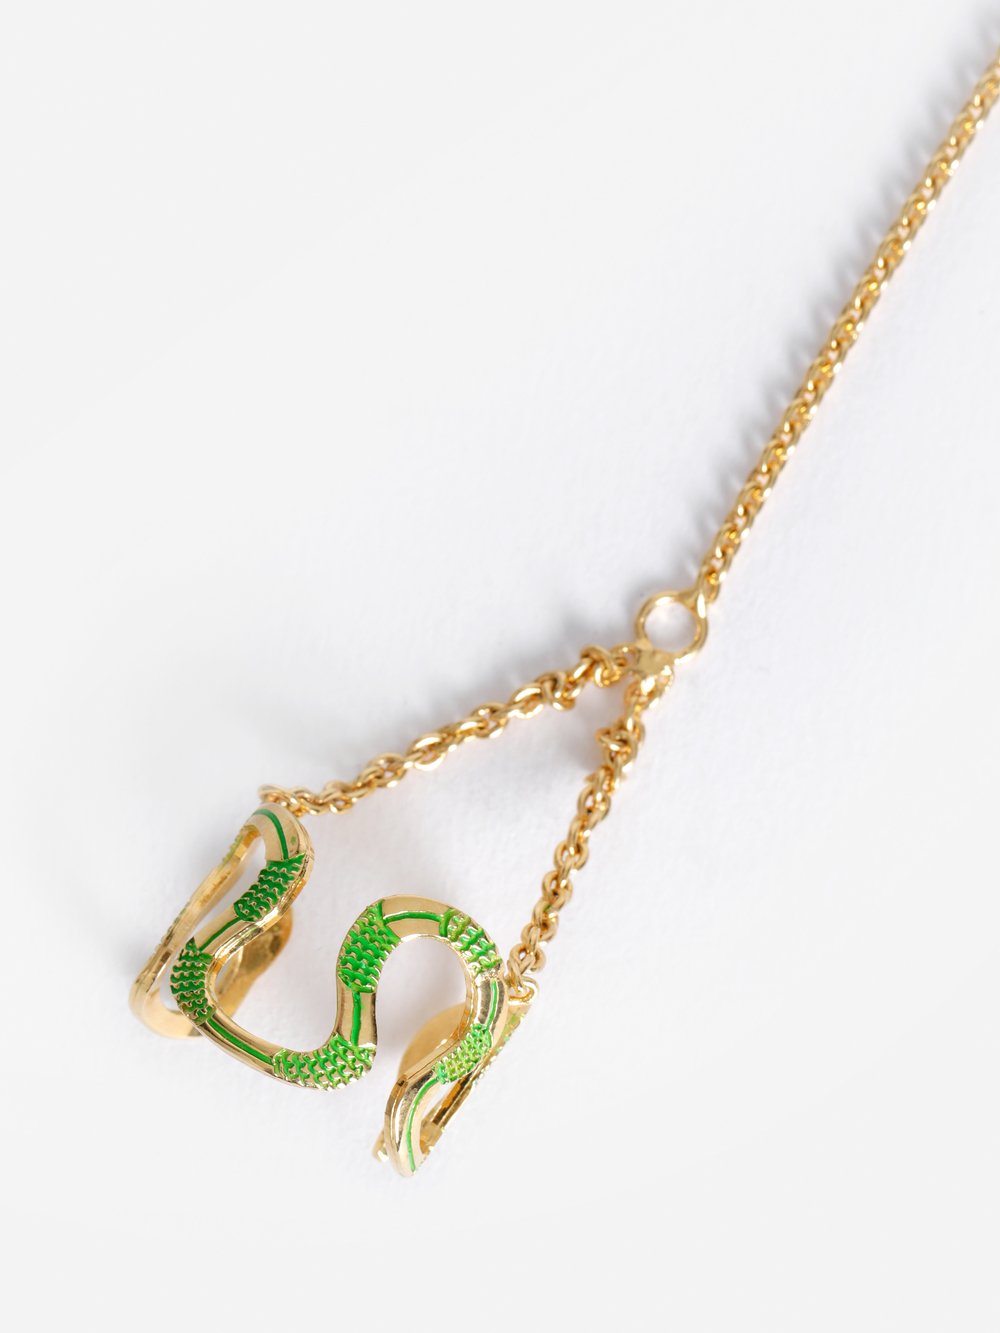 Sita Abellán imagina que las joyas son serpiente salvajes